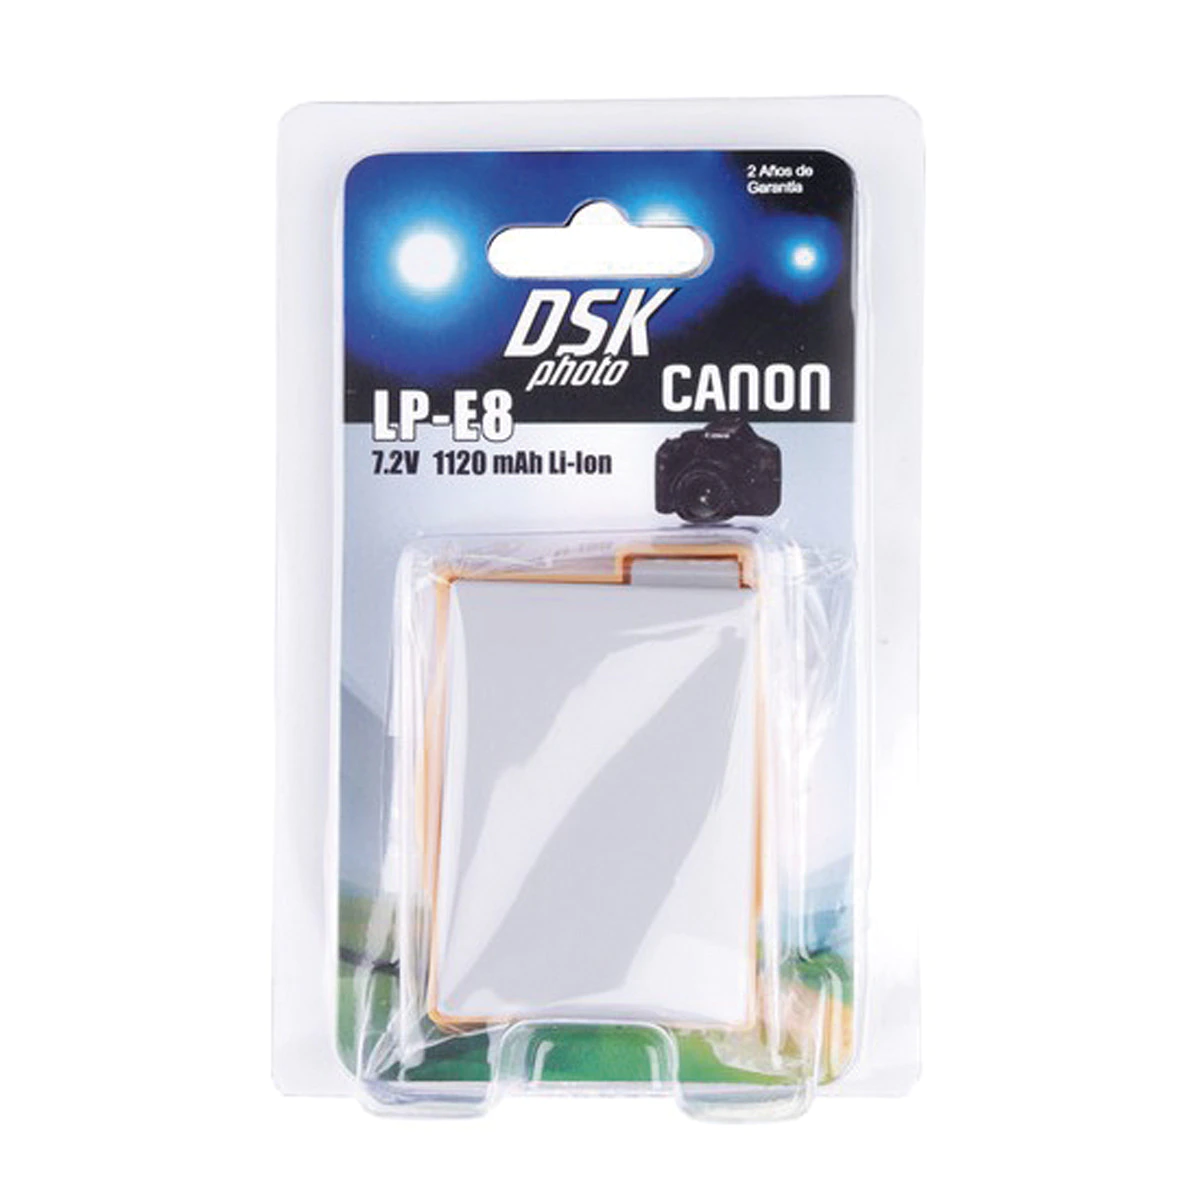 Batería DSK LP-E8 para cámaras Canon